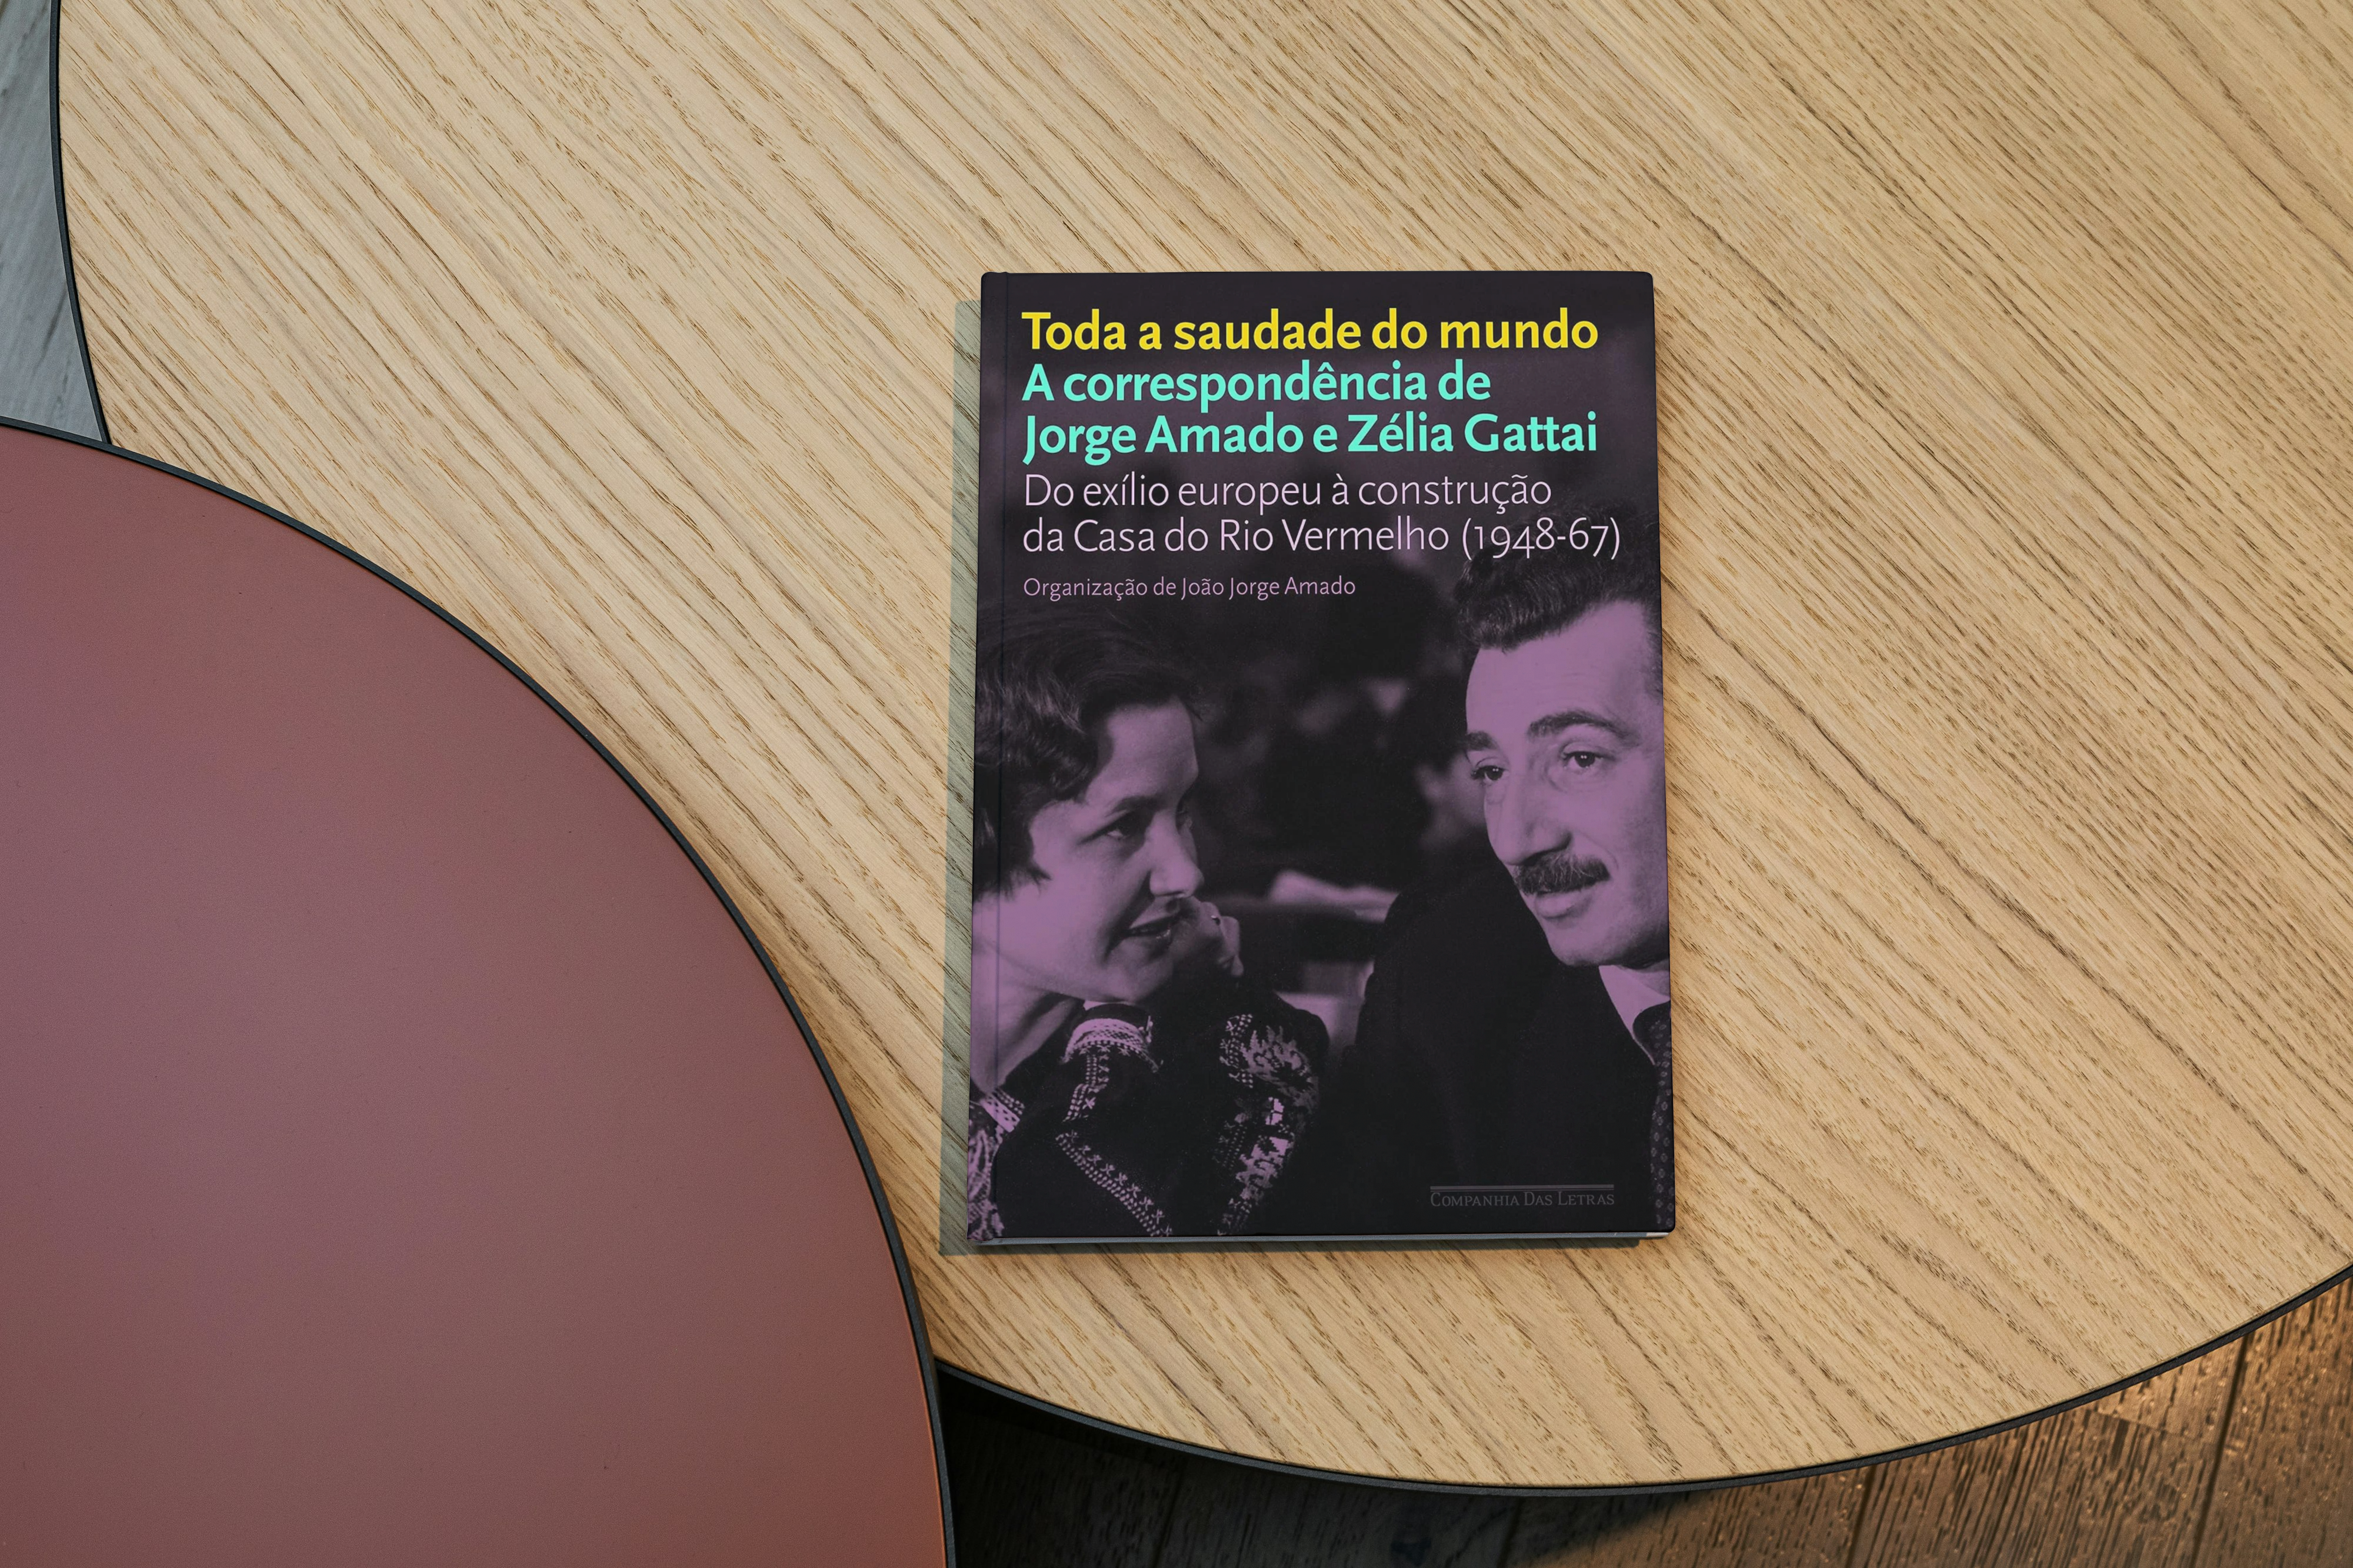 [RESENHA #869] Toda a saudade do mundo: as correspondência de Zélia Gattai & Jorge Amado, de Zélia Gattai